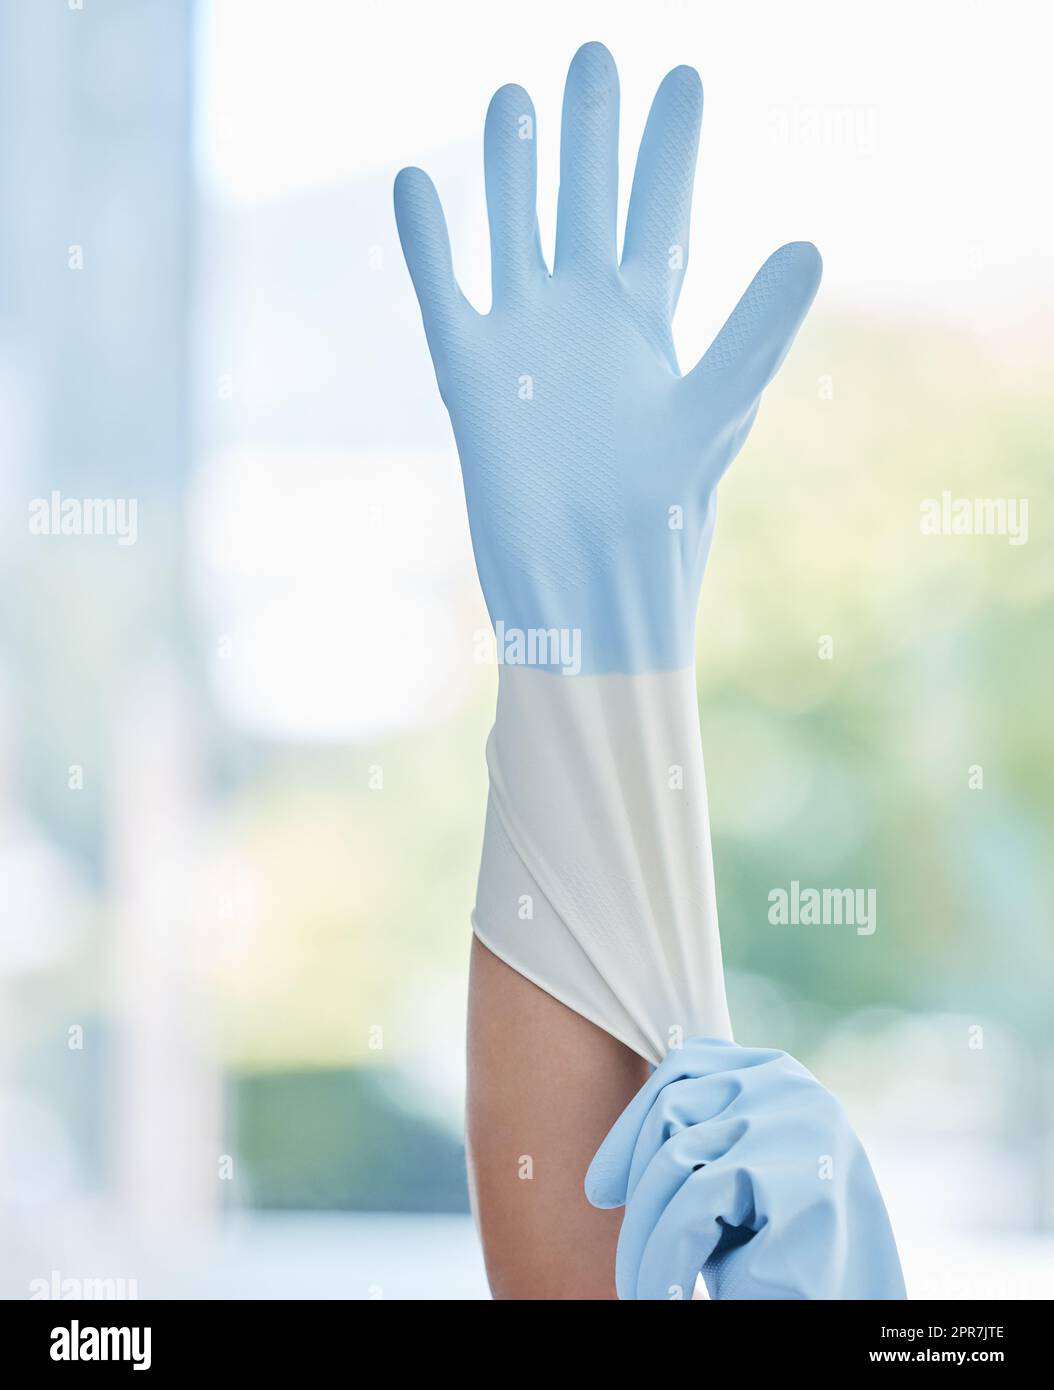 Un travailleur domestique méconnaissable portant des gants en caoutchouc au travail. Une femme de race mixte inconnue se préparant à faire des travaux ménagers Banque D'Images